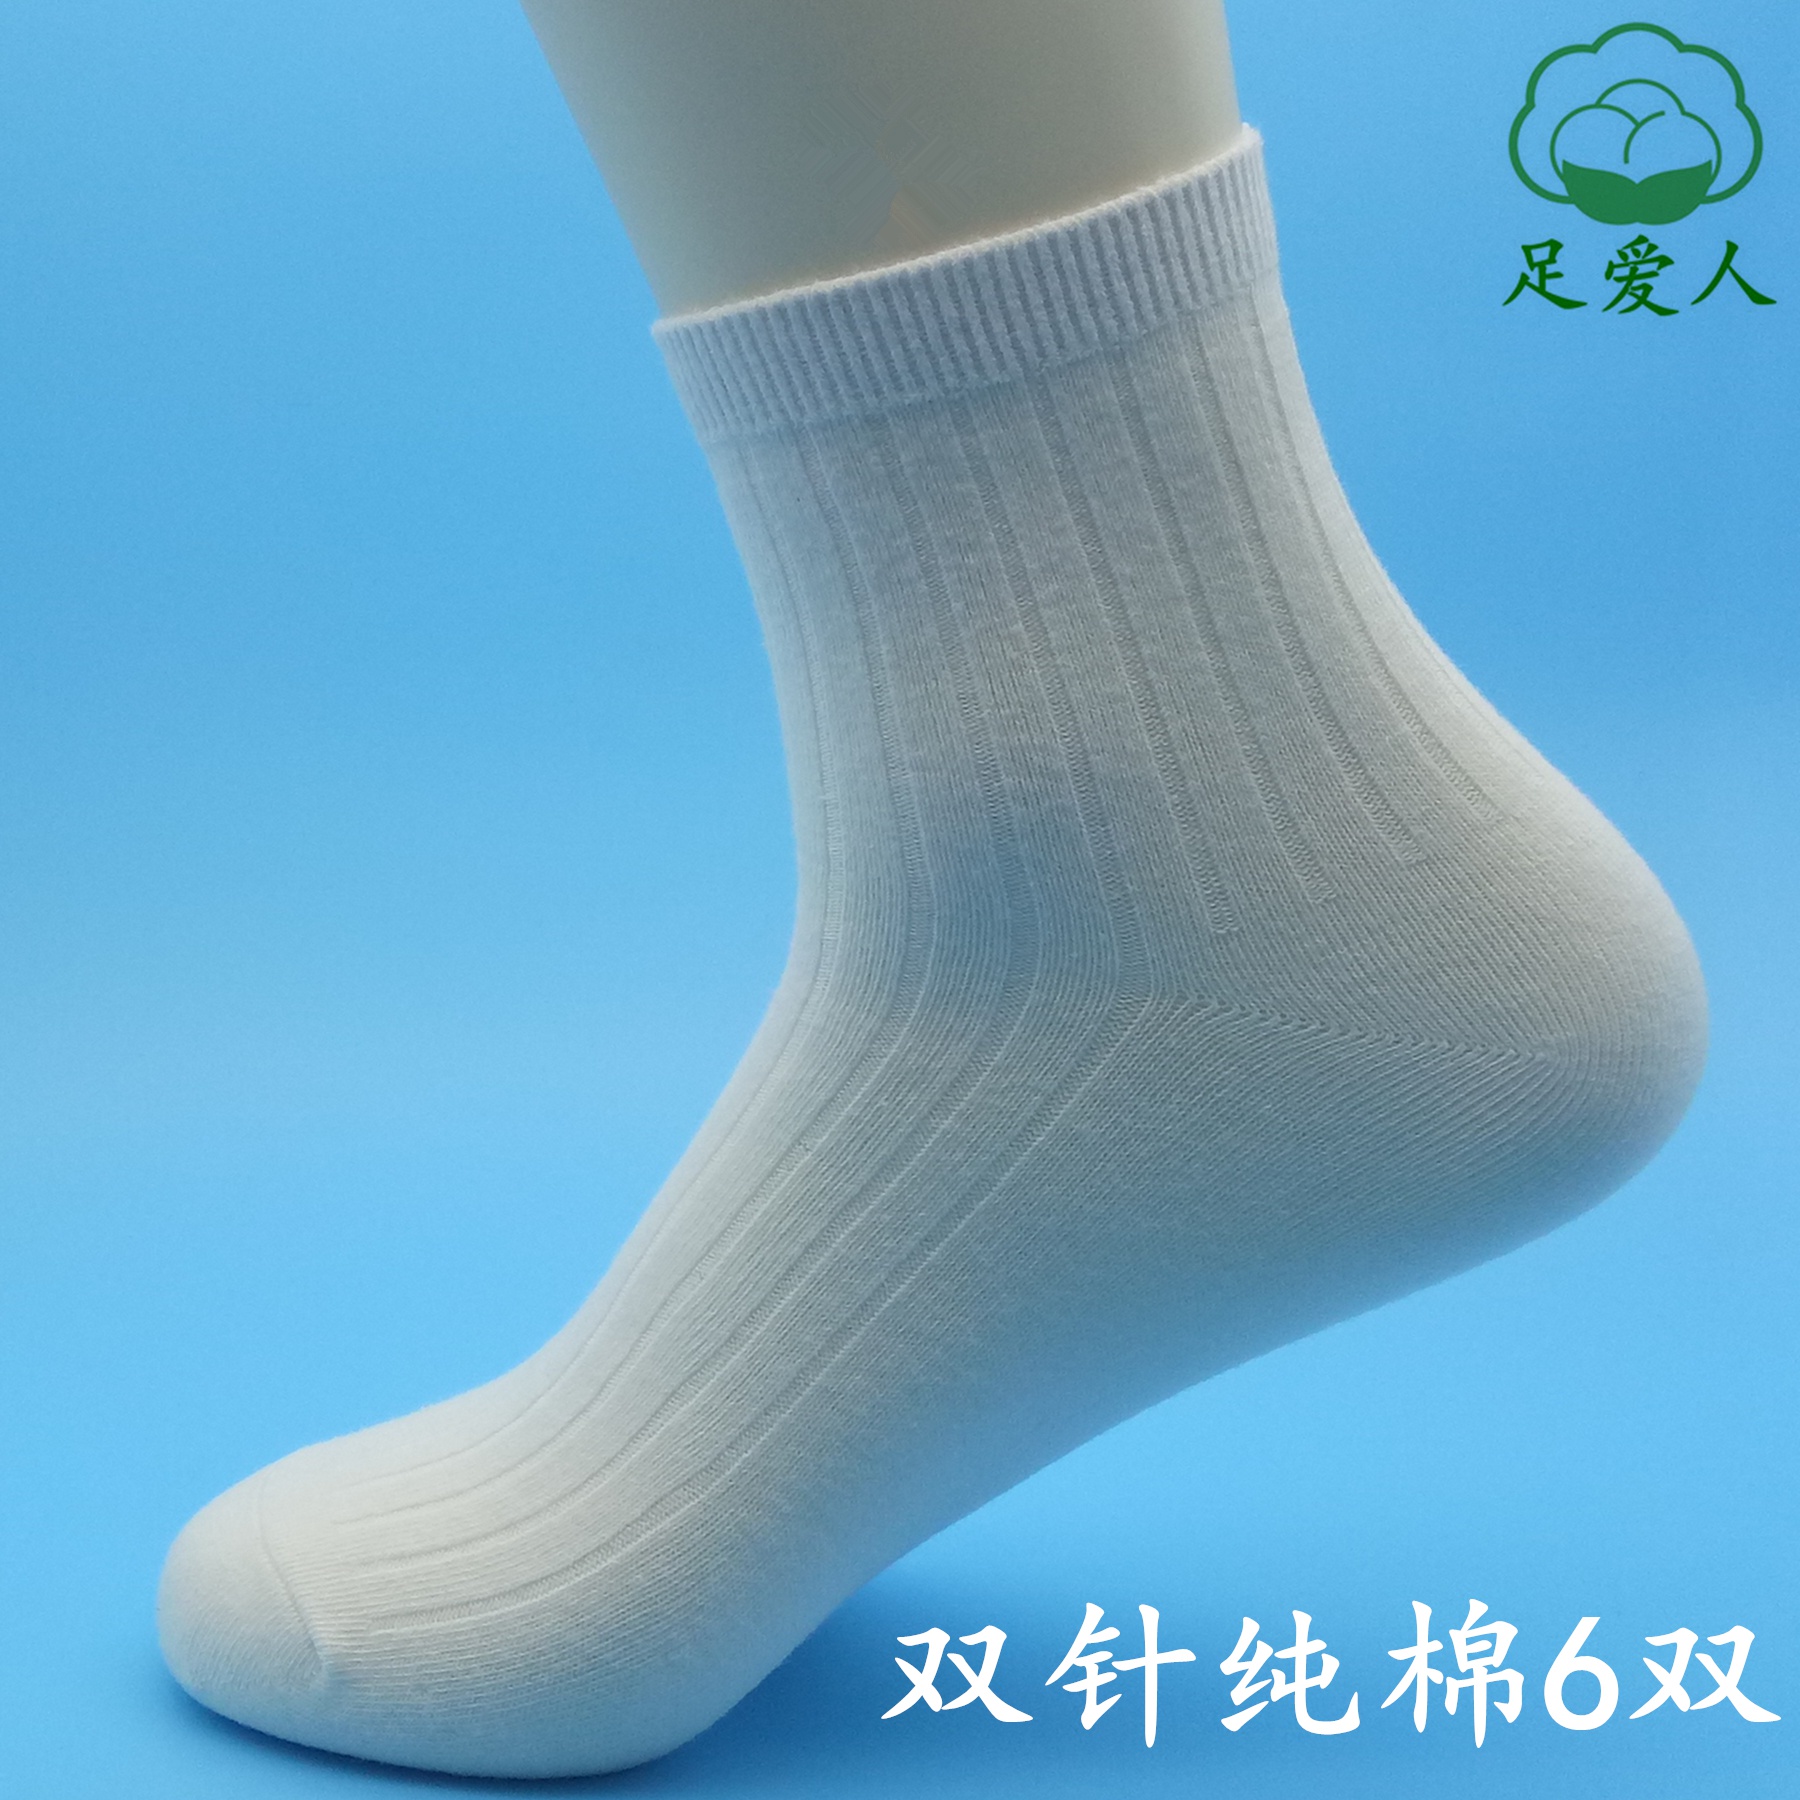 100%纯棉全棉白色保暖加厚防臭运动棉袜不起球秋冬季 中筒袜子男士